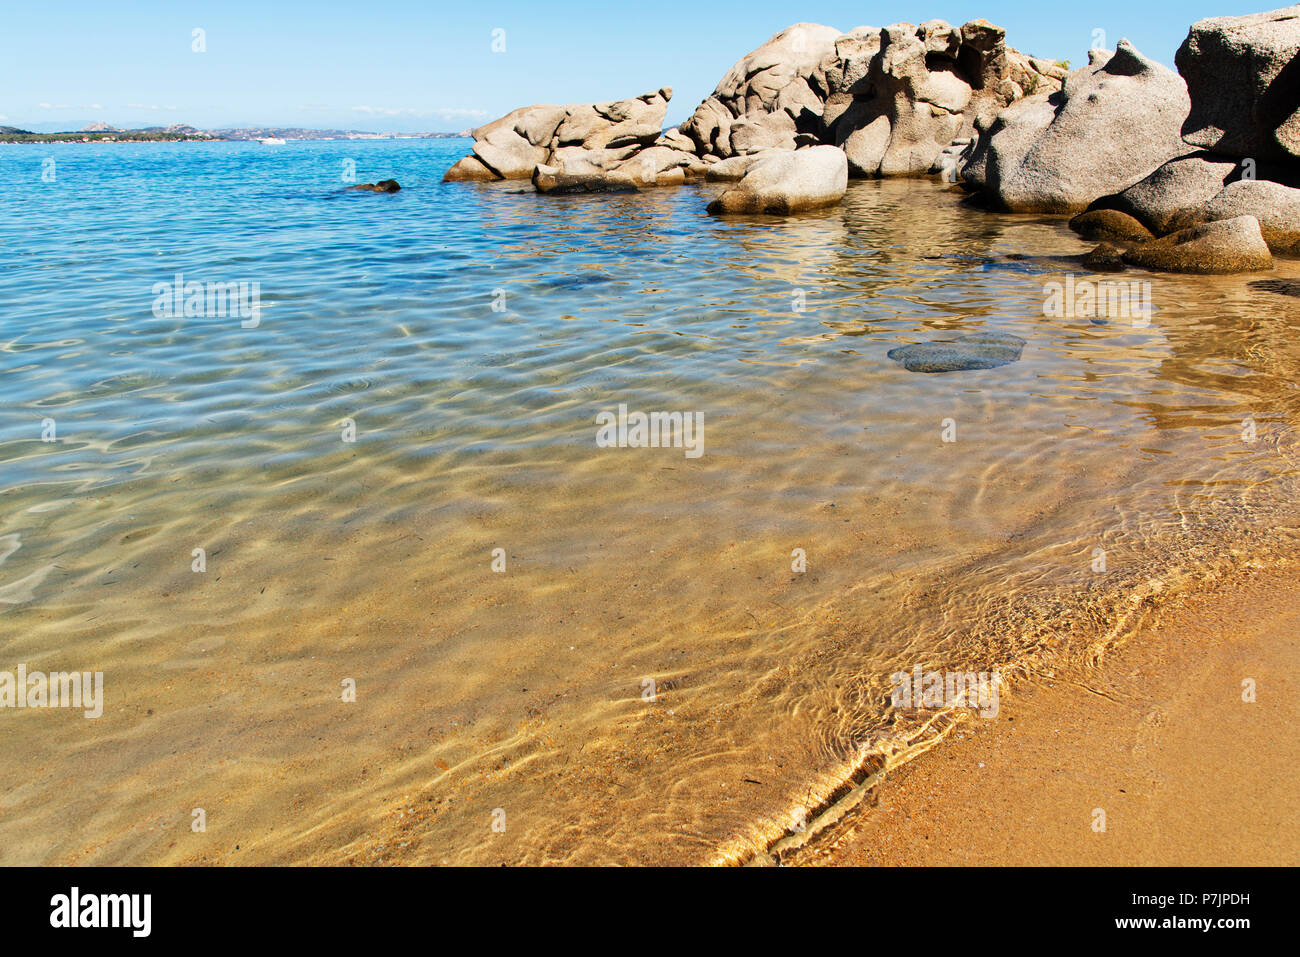 Una vista delle acque limpide del mare Mediterraneo e le peculiari formazioni rocciose di Cala Ginepro spiaggia, nella famosa Costa Smeralda, Sardegna, Ita Foto Stock